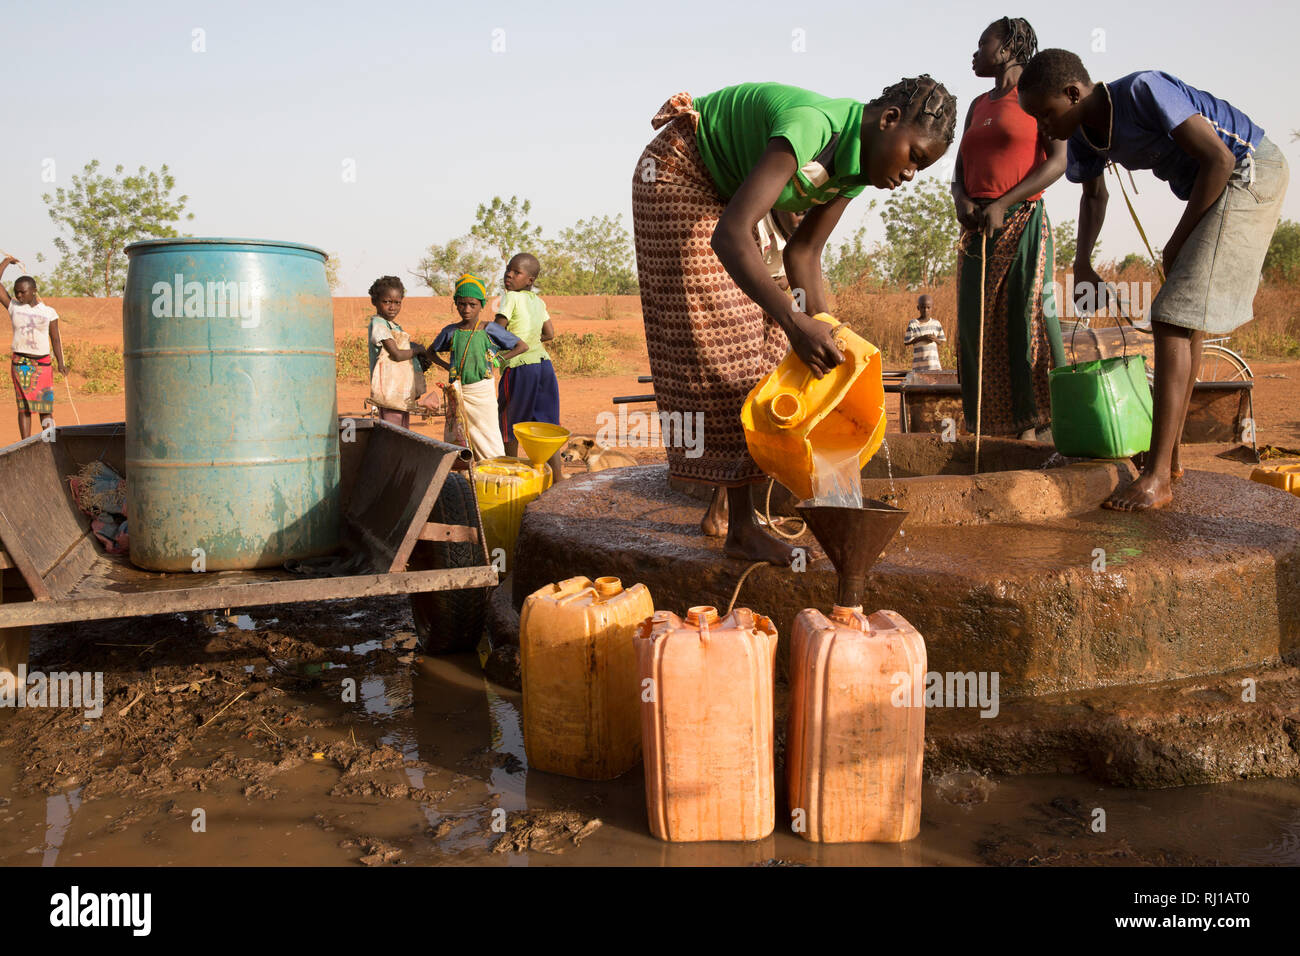 Samba Dorf, yako Provinz, Burkina Faso: Abzetta Sondo, 19, holt Wasser für Ihren Haushalt. Stockfoto